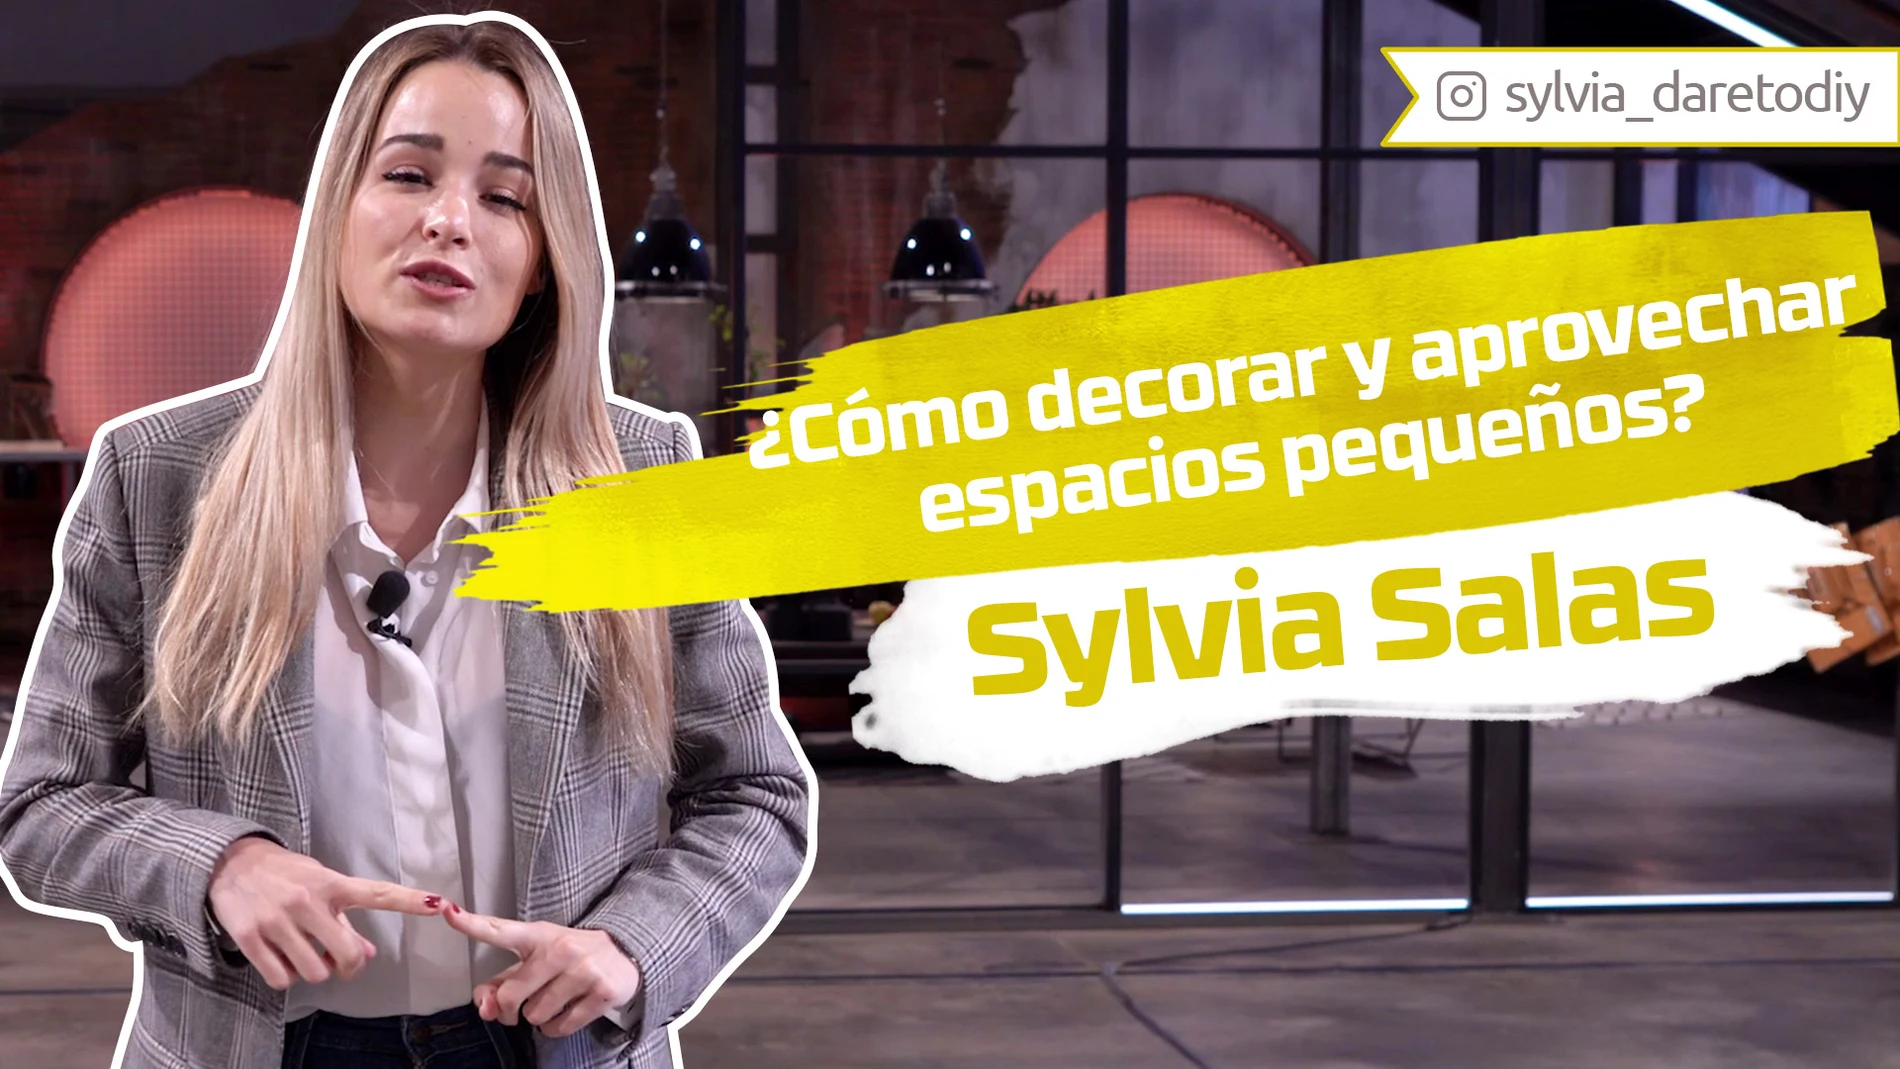 Sylvia Salas nos enseña cómo decorar y aprovechar espacios pequeños